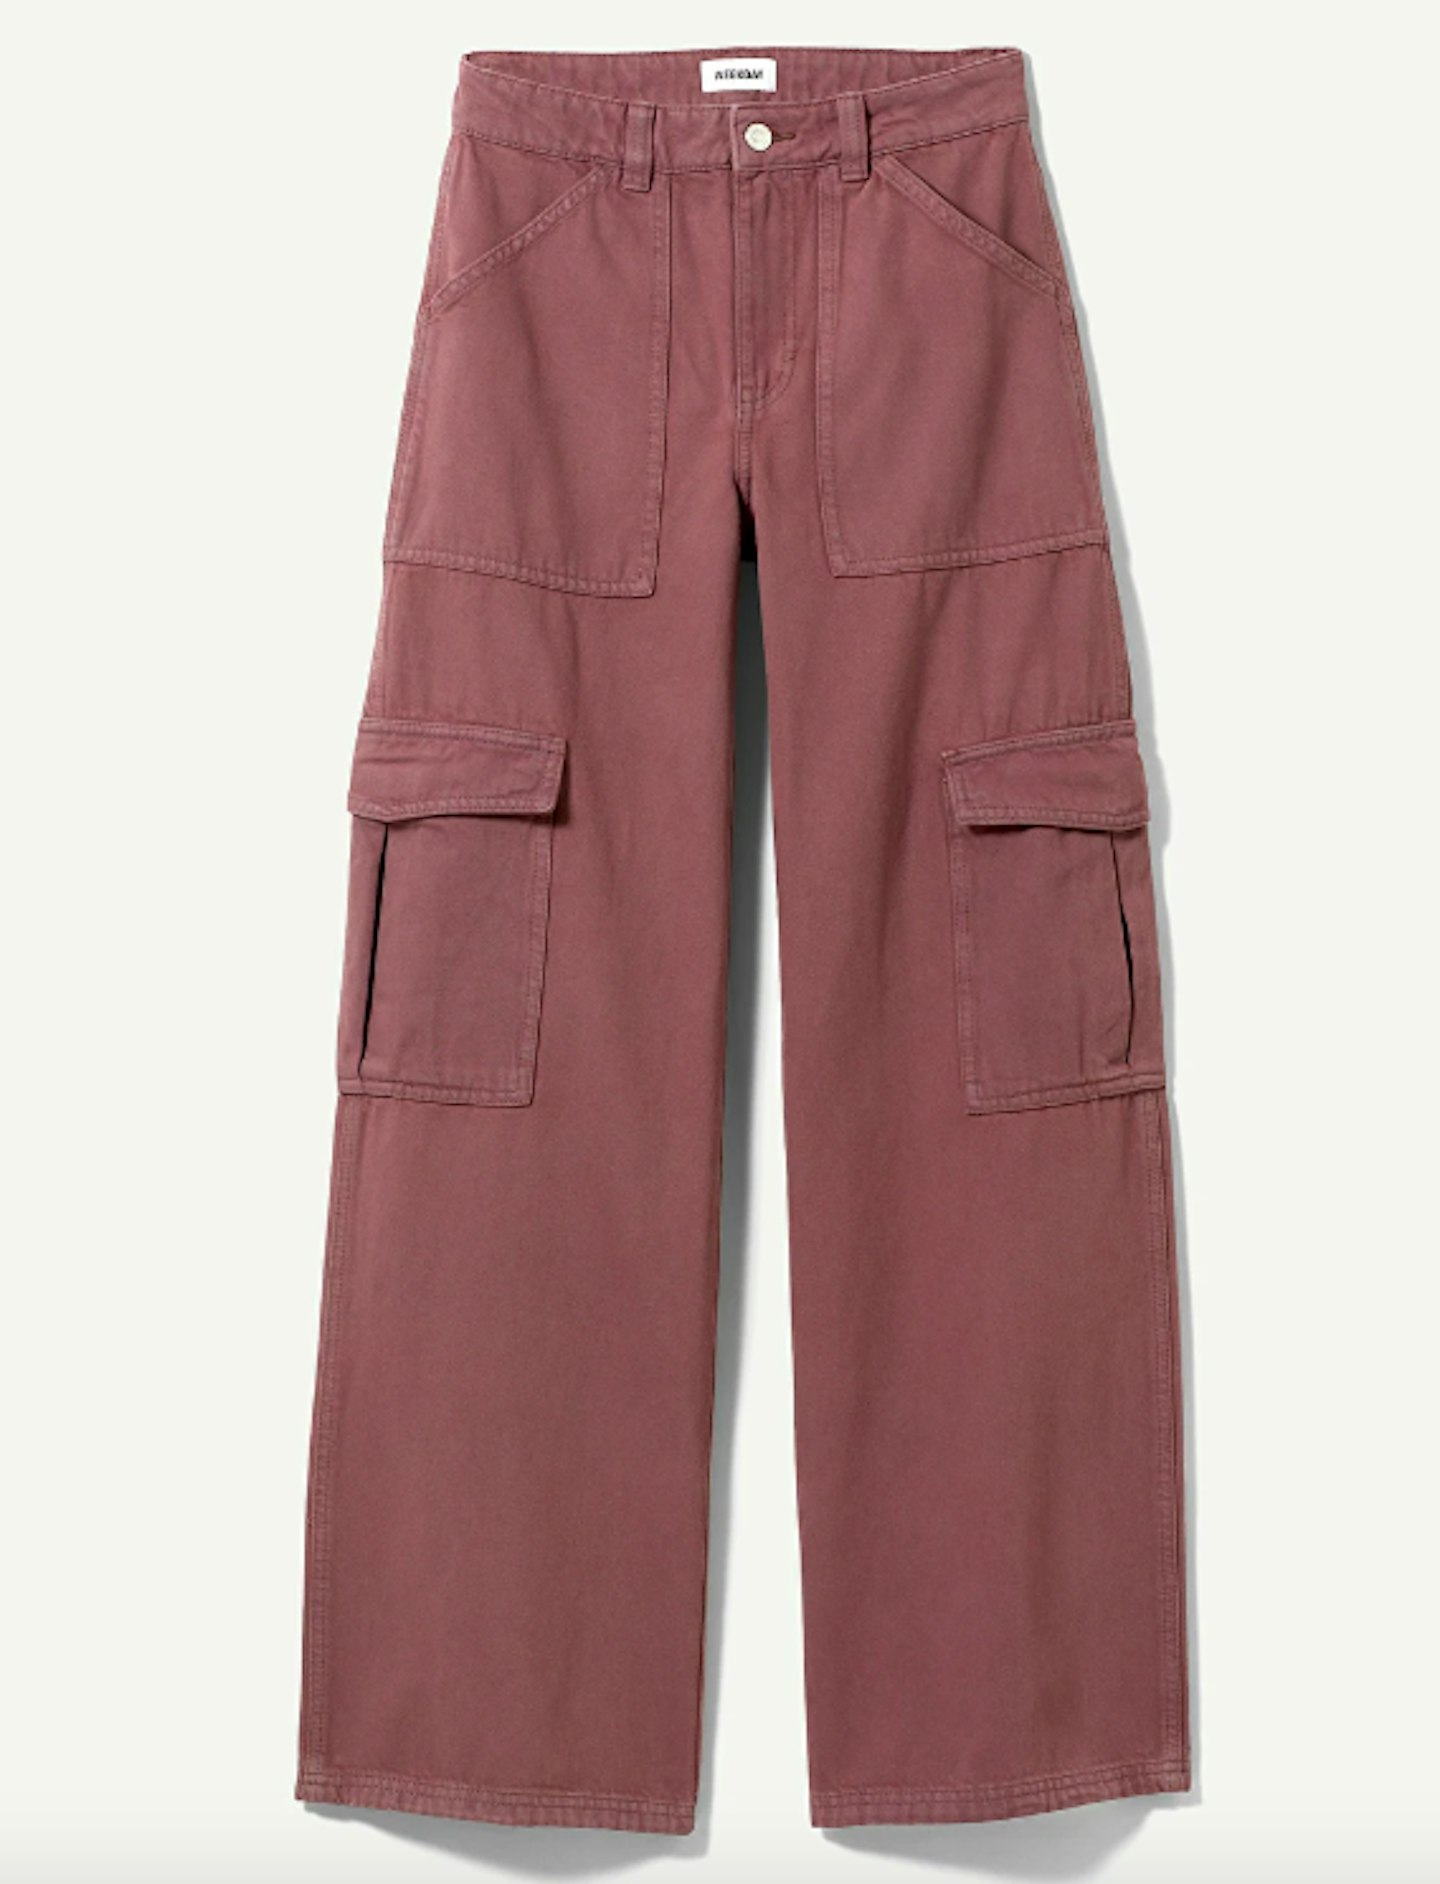 Weekday, Julian Workwear Trouser, £40